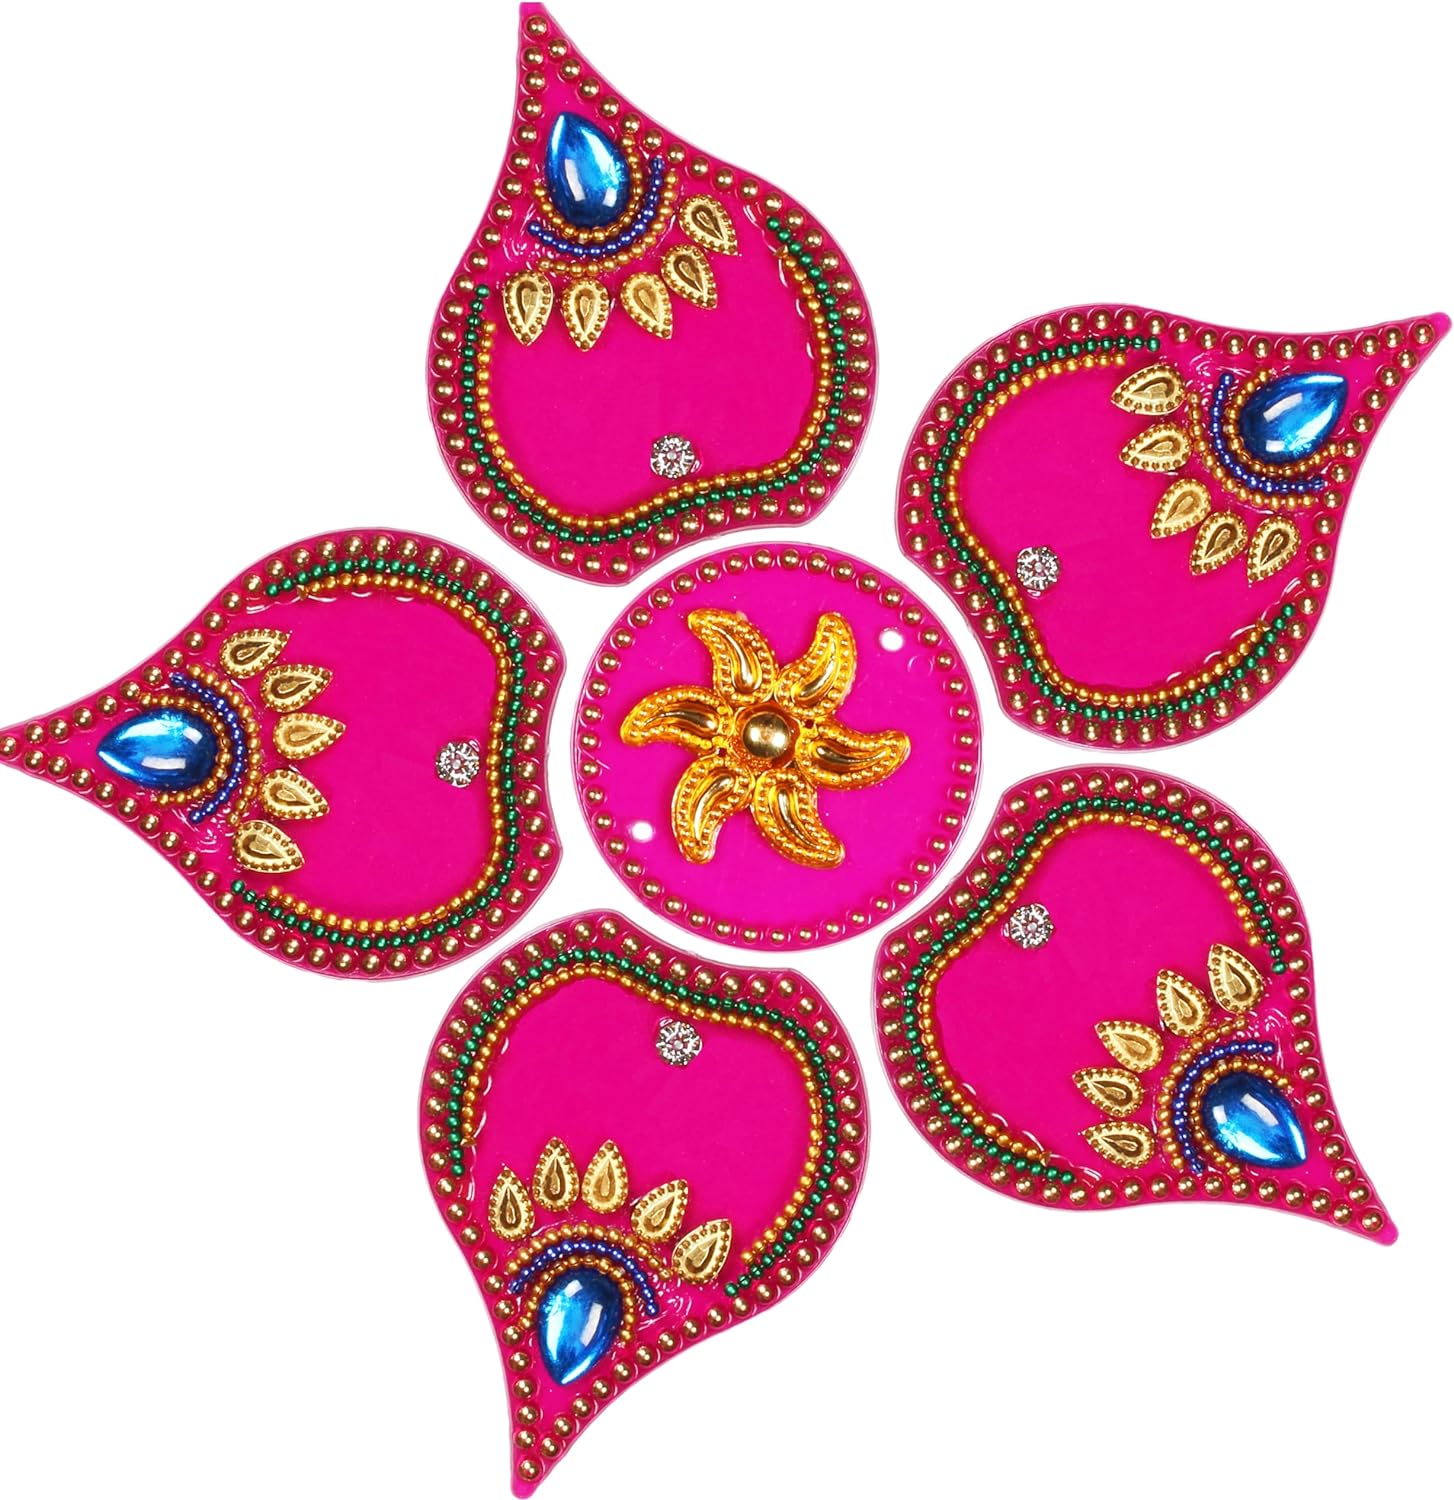 ARTISENIA Hecho a mano Dipak acrílico Diwali Rangoli decoración de piso